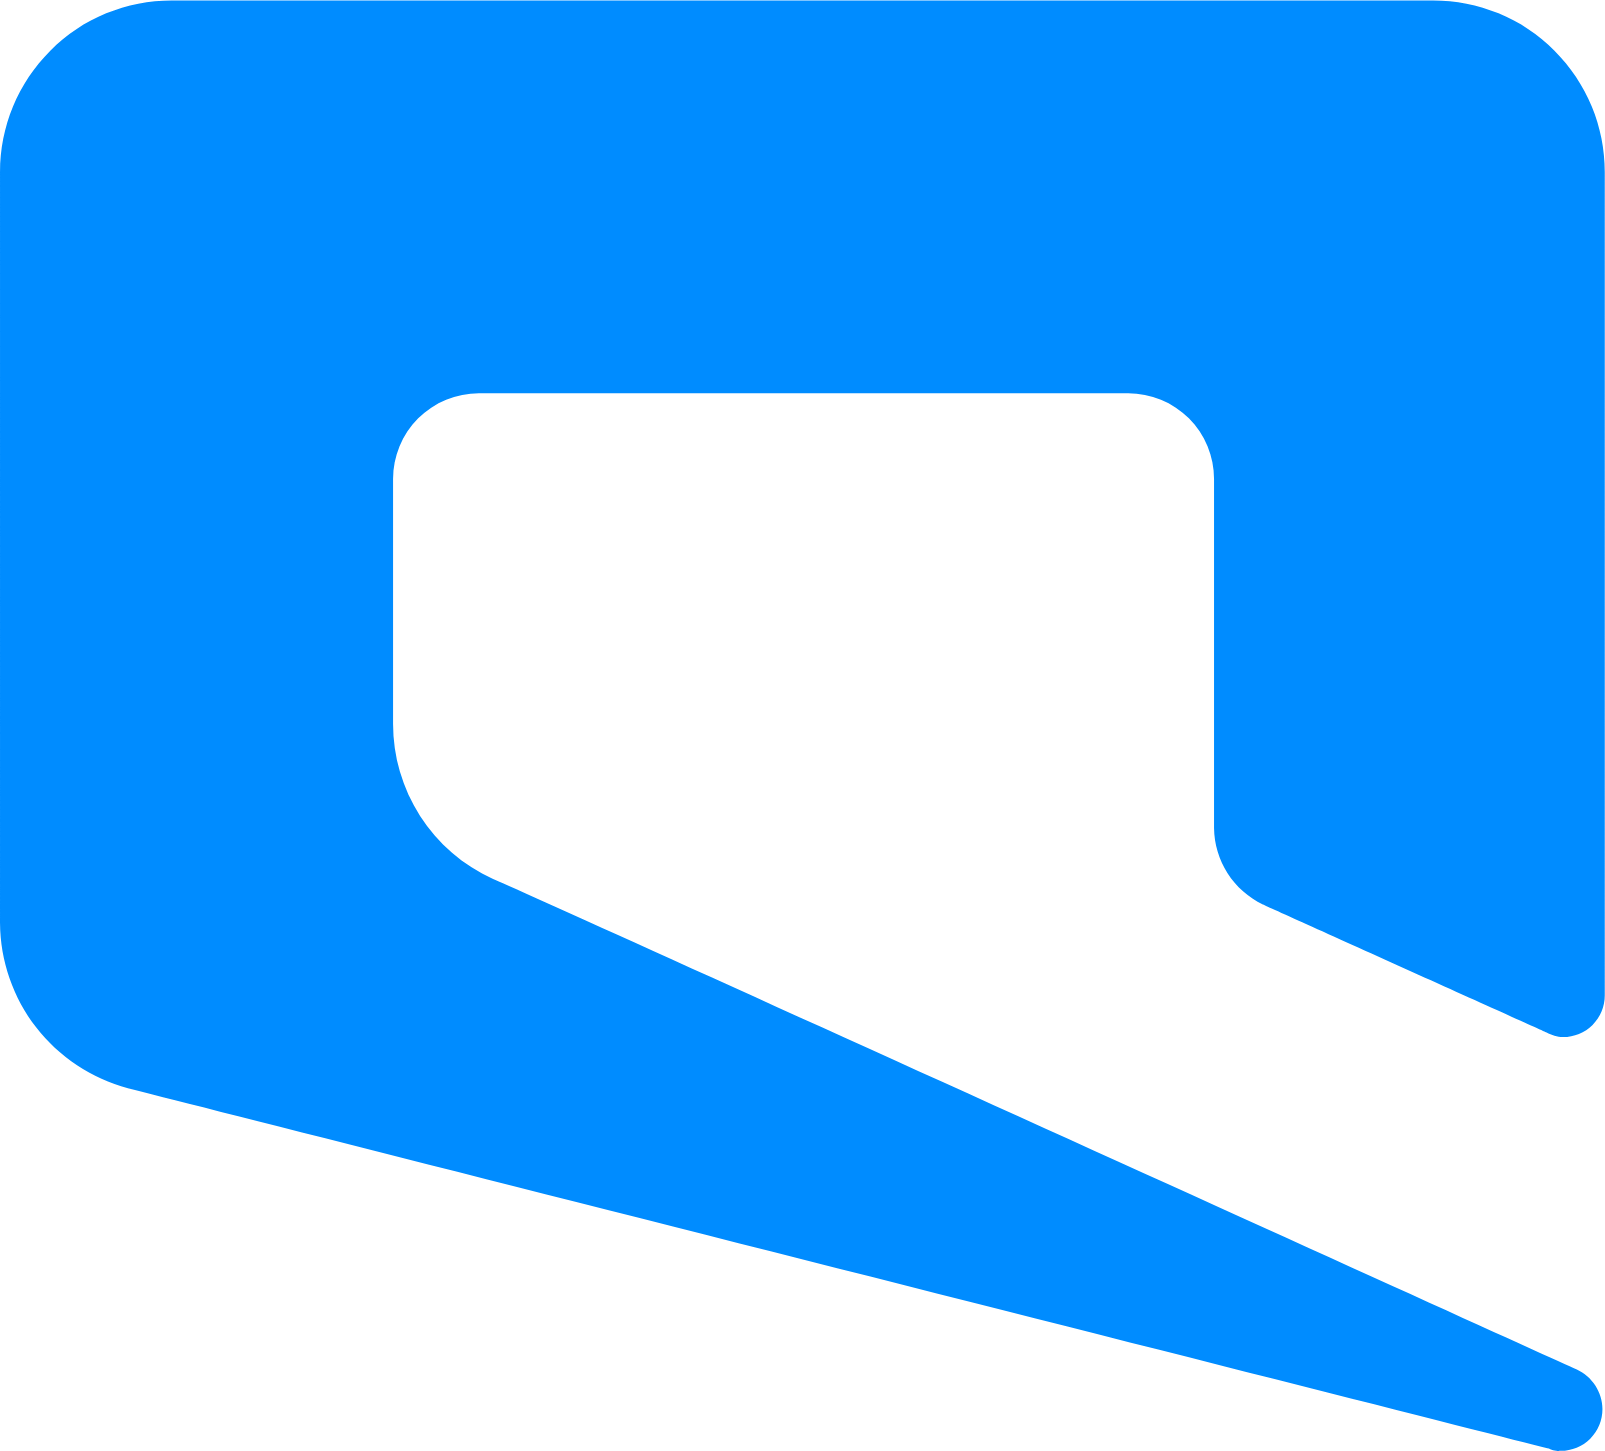 Etihad Etisalat (Mobily) logo (PNG transparent)